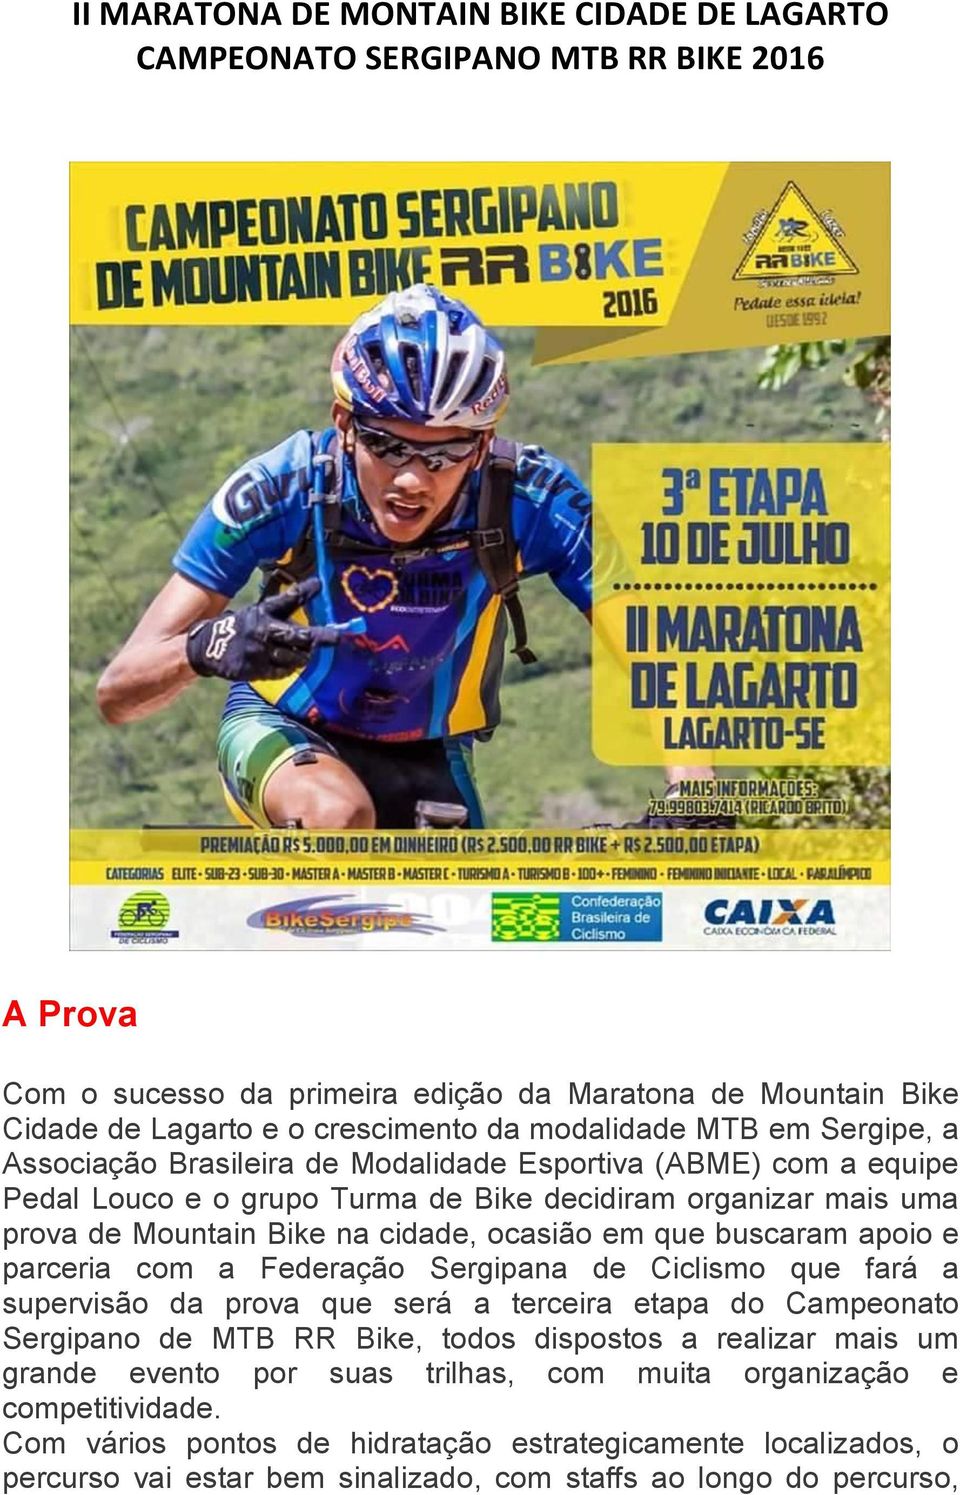 ocasião em que buscaram apoio e parceria com a Federação Sergipana de Ciclismo que fará a supervisão da prova que será a terceira etapa do Campeonato Sergipano de MTB RR Bike, todos dispostos a